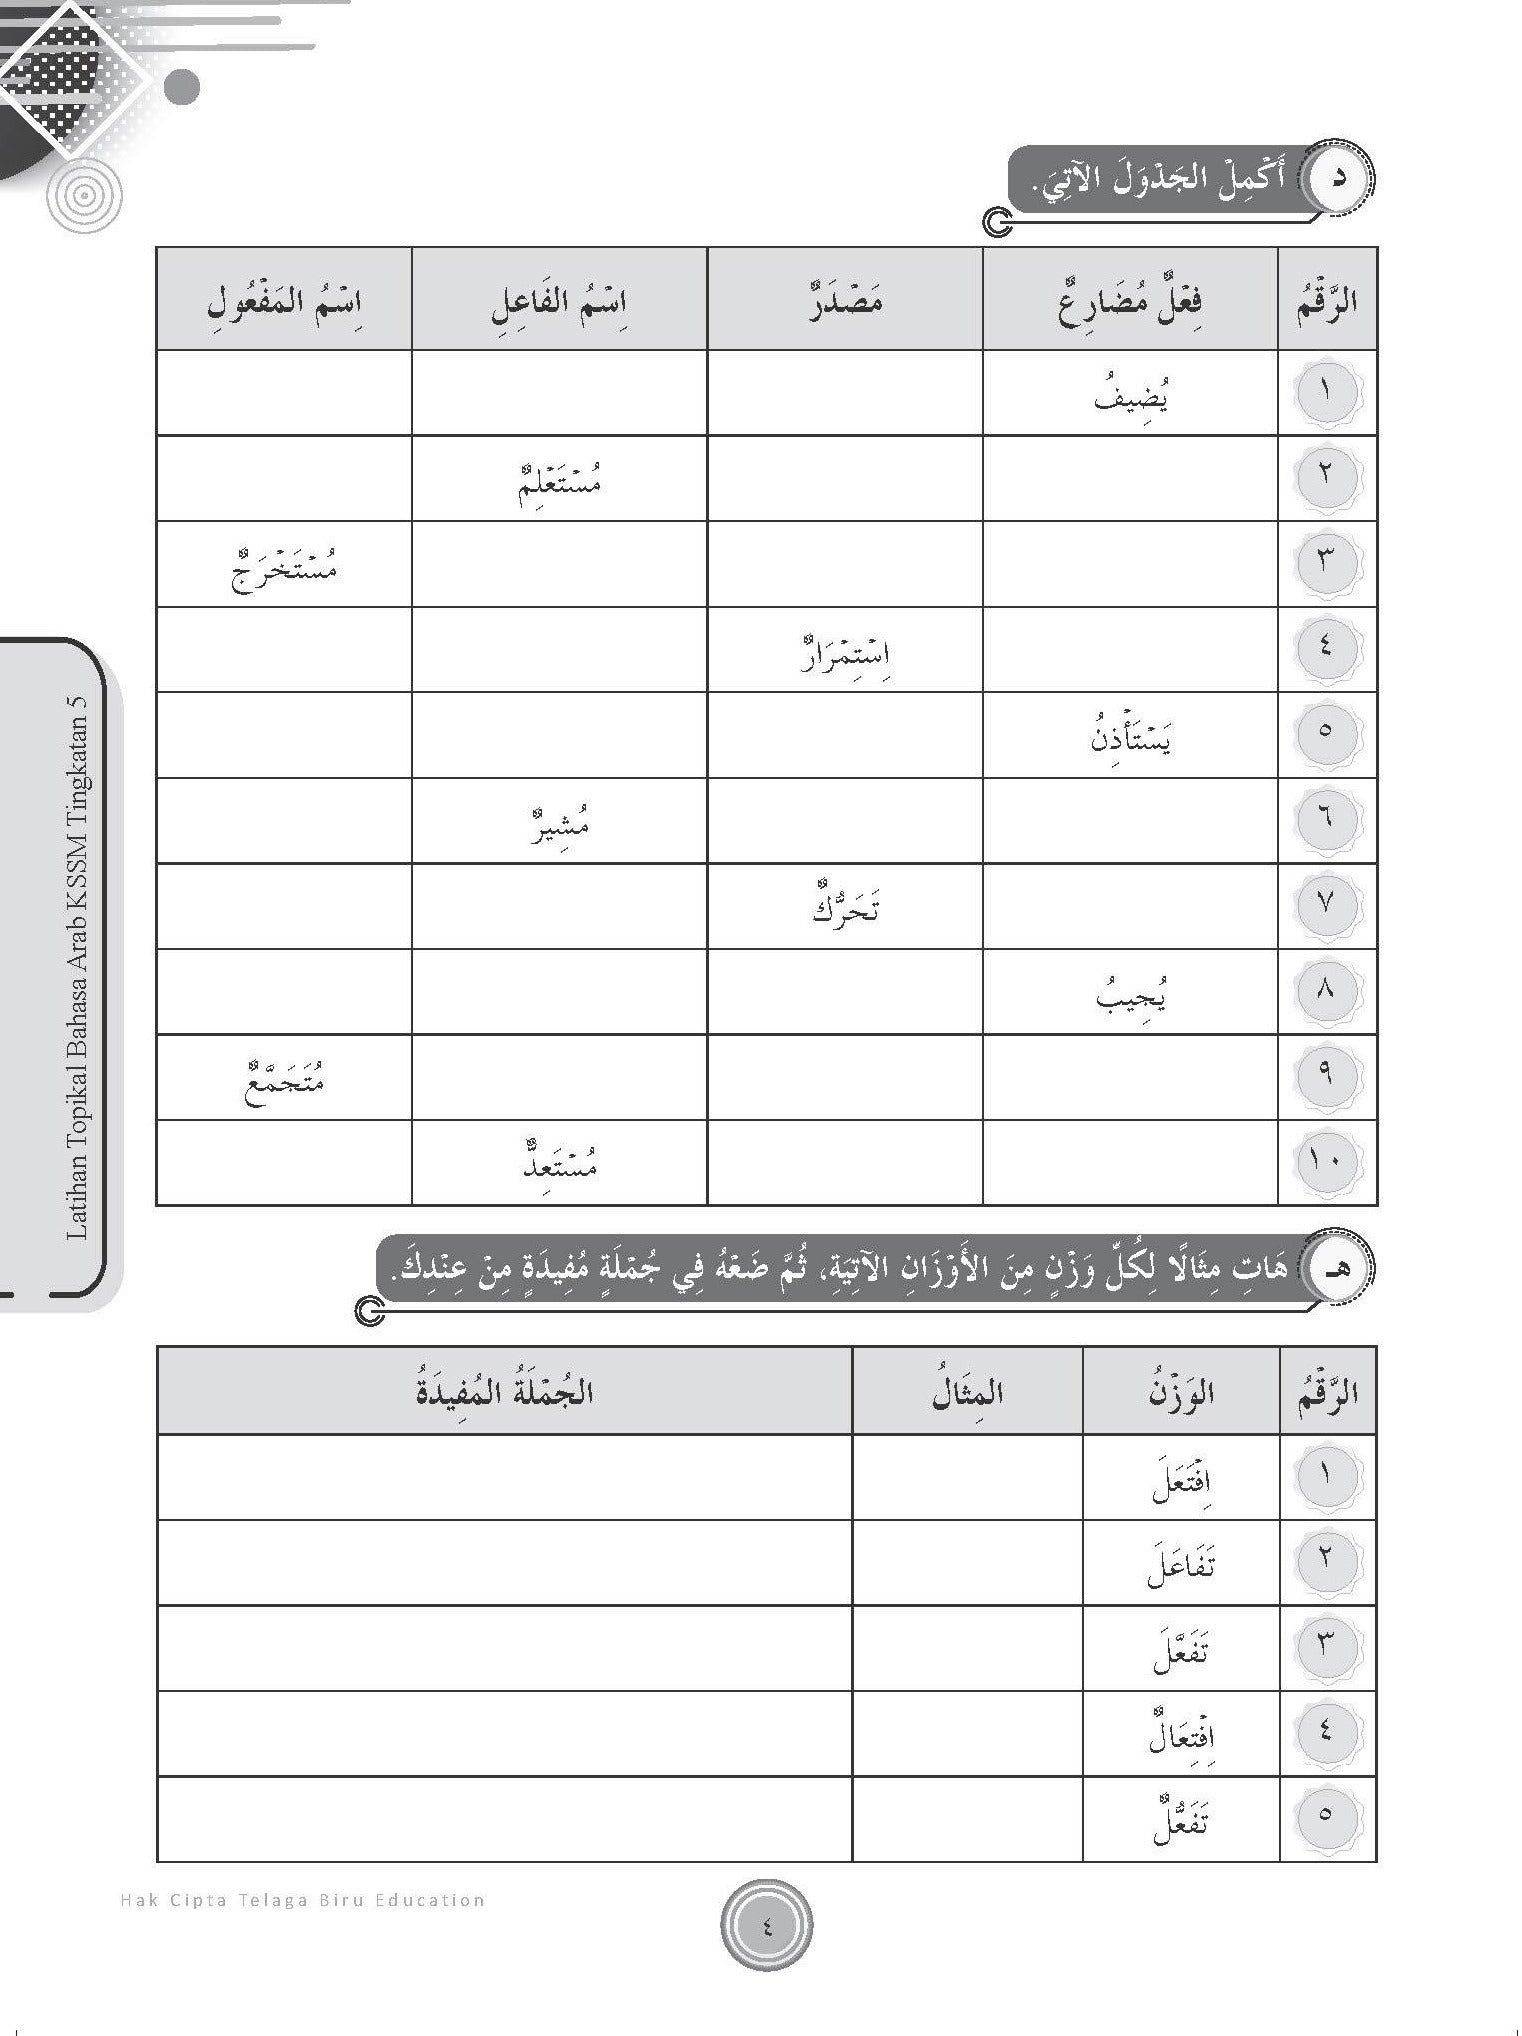 Maximum Practice SPM Latihan Topikal Bahasa Arab Tingkatan  5 - (TBBS1231)